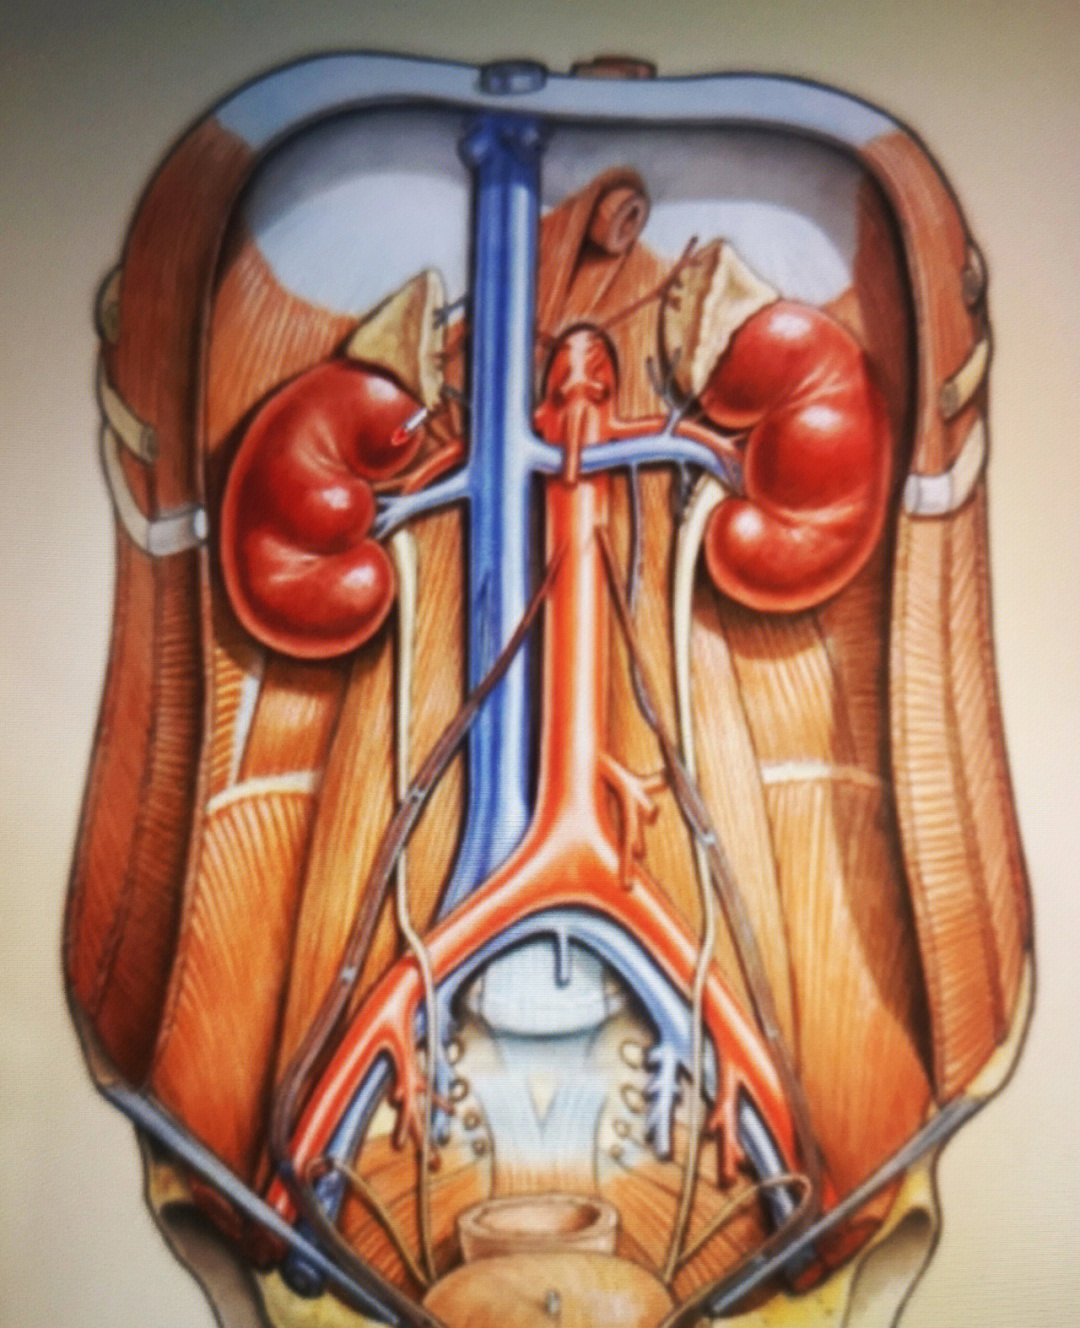 肾脏的位置图片 解剖图片